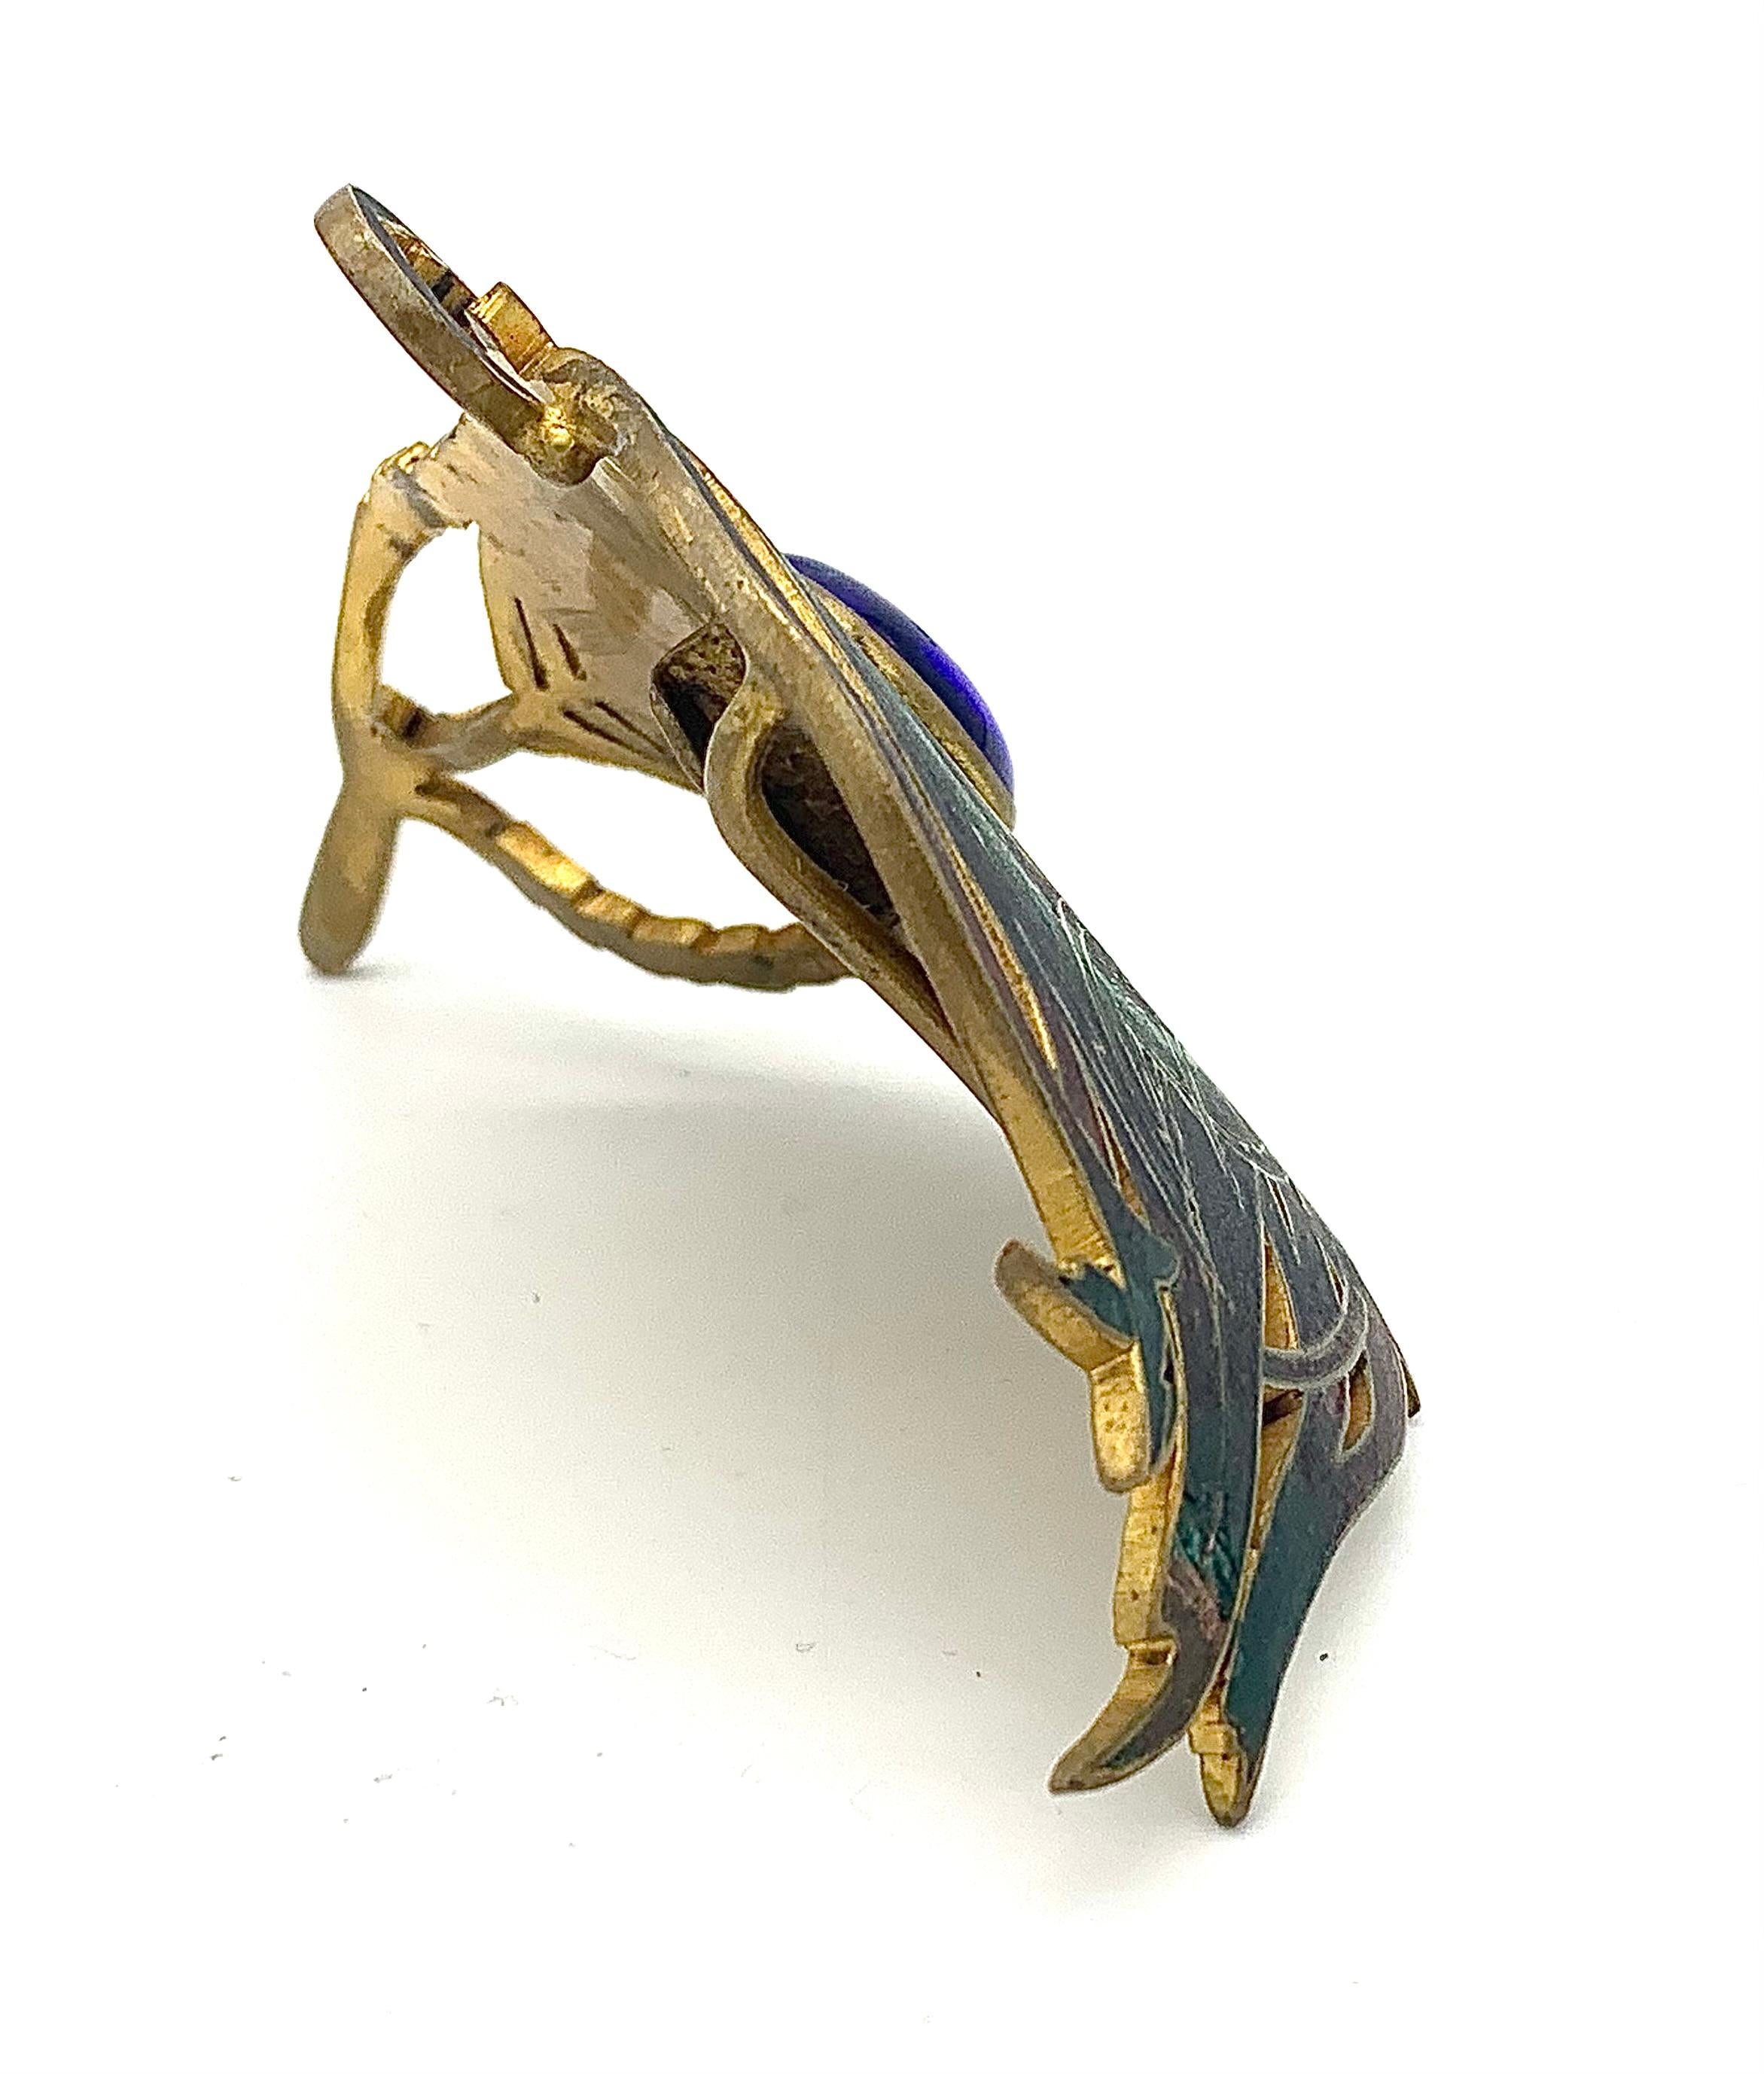 Cette remarquable boucle Art nouveau en forme de plume de paon a été conçue et exécutée par Piel Frères, Paris vers 1900.  
Une boucle identique est publiée dans le livre de Vivienne Becker 